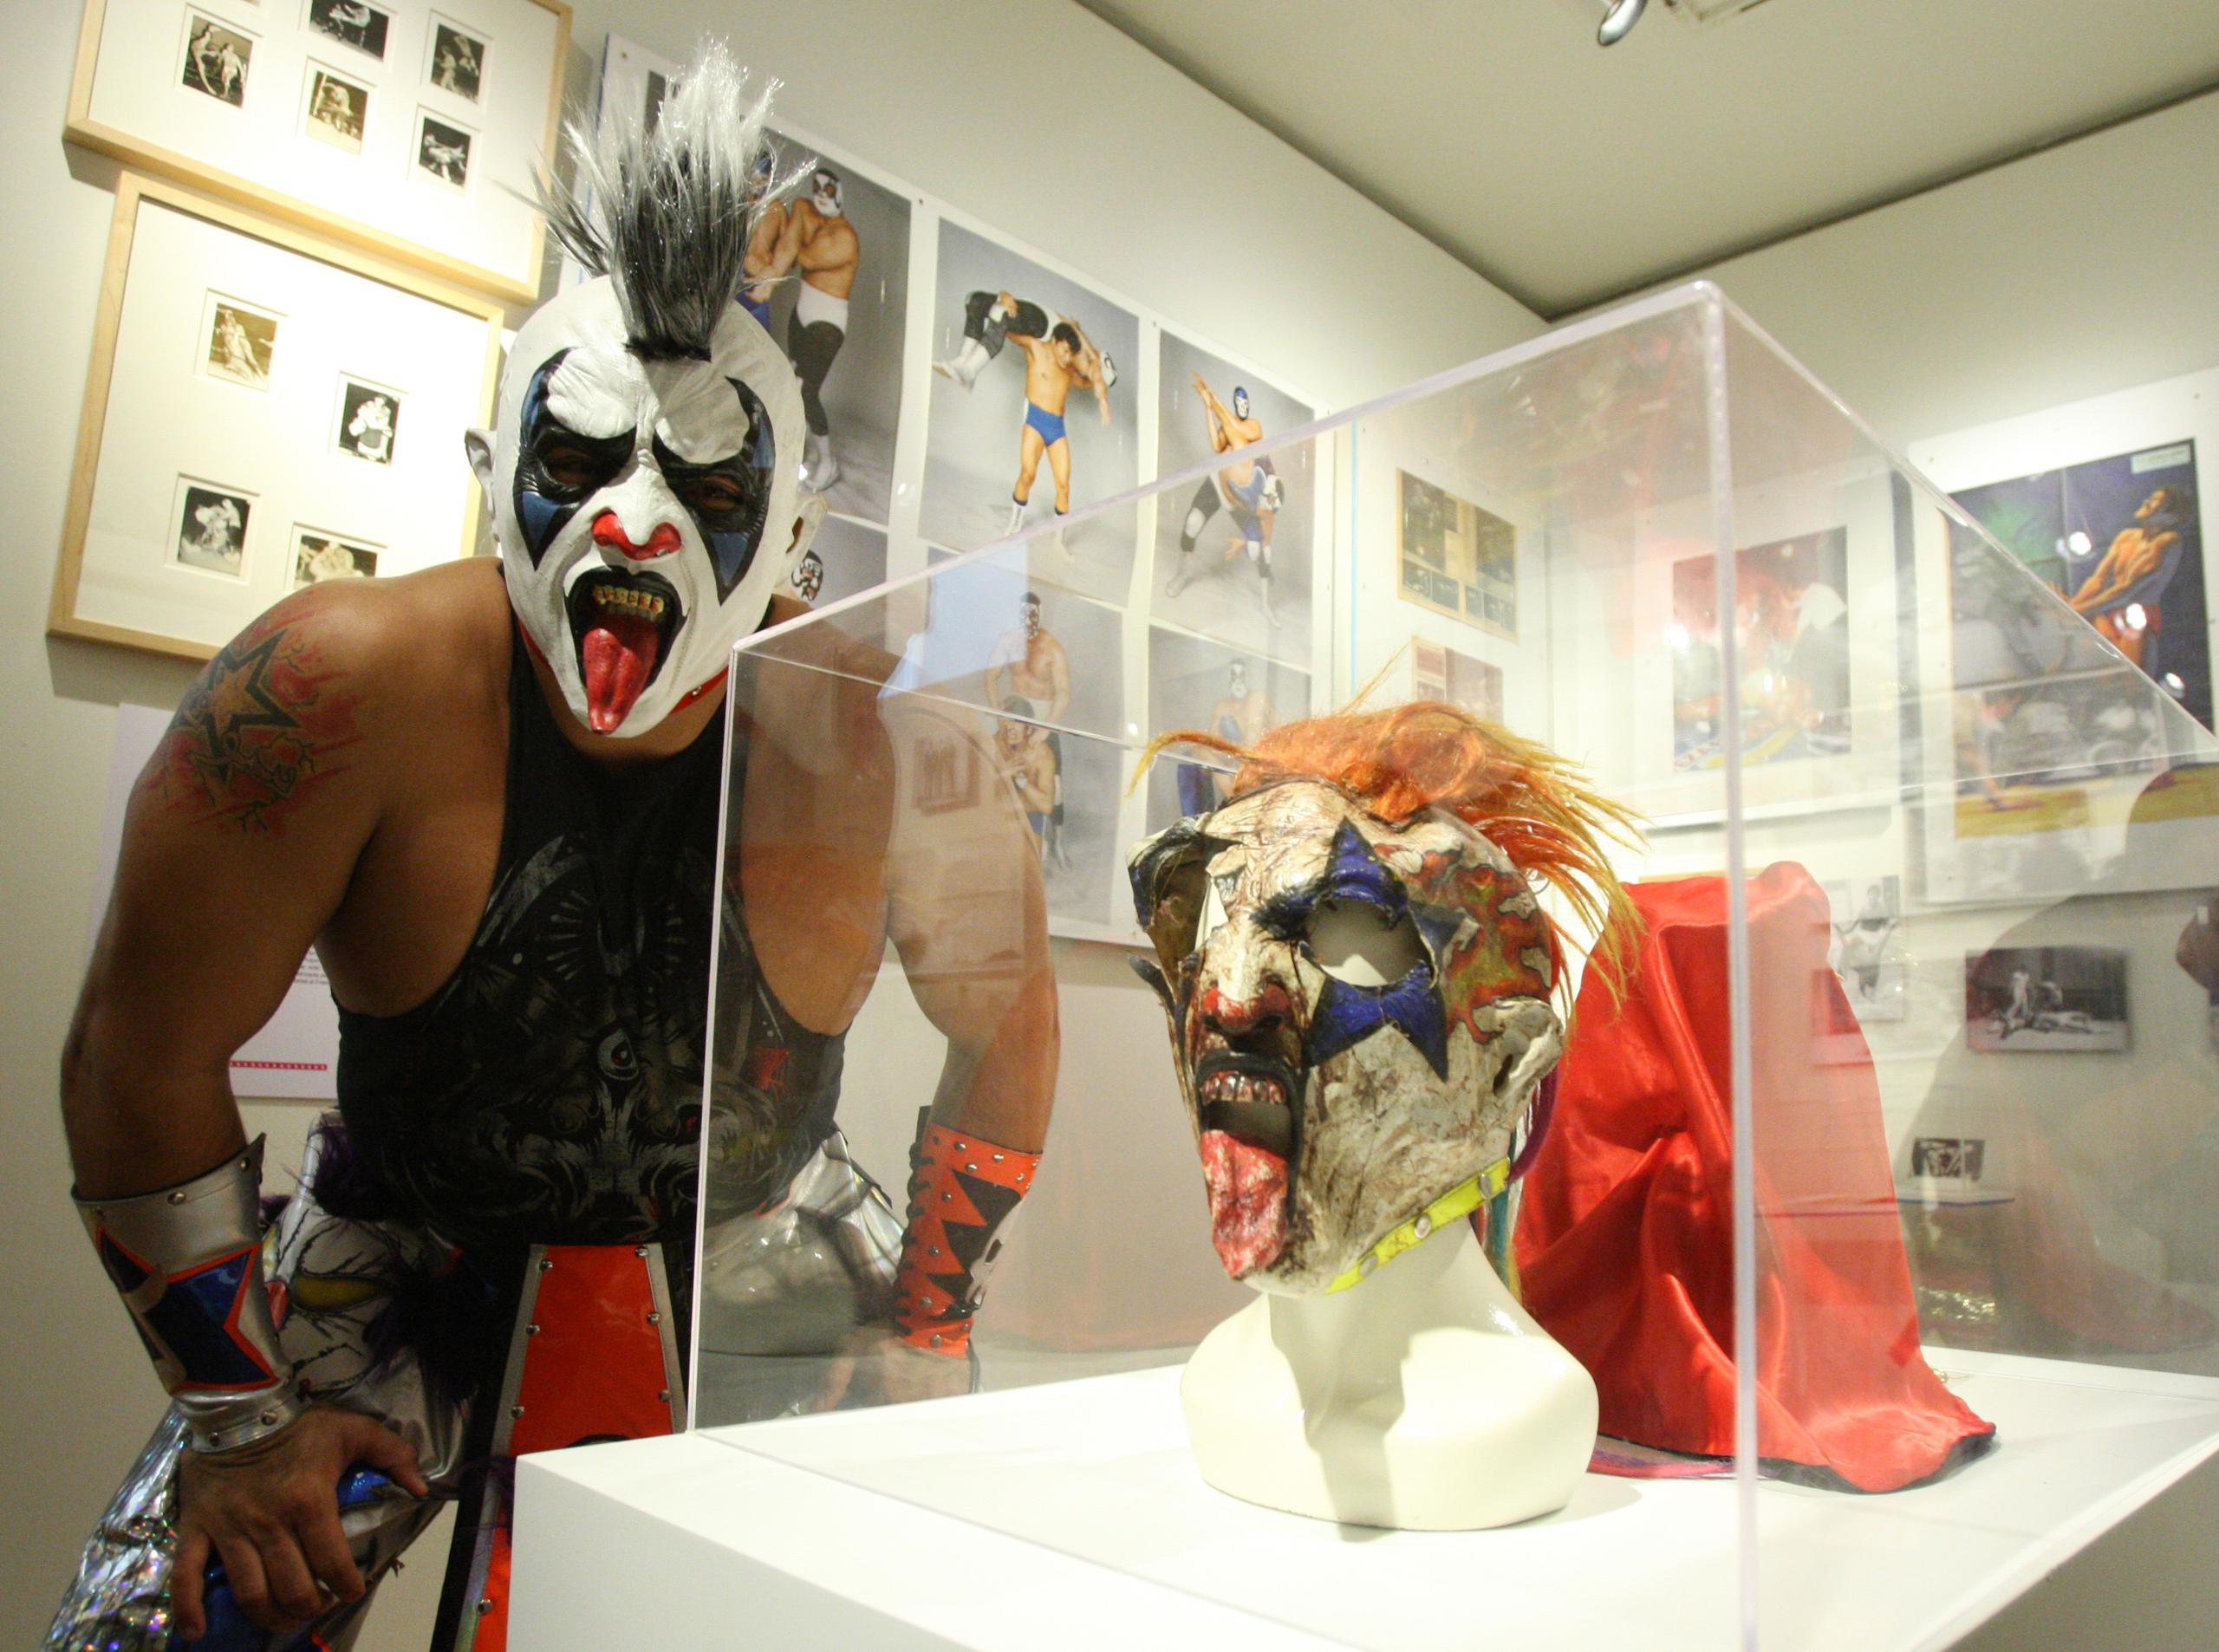 El luchador Psycho Clown posa durante la exposición que pretende que "la lucha libre alcance el estatus de los mariachis o el tequila como seña de identidad nacional" mexicana, aseveró el curador de la exhibición, Antonio Soto. (EFE)